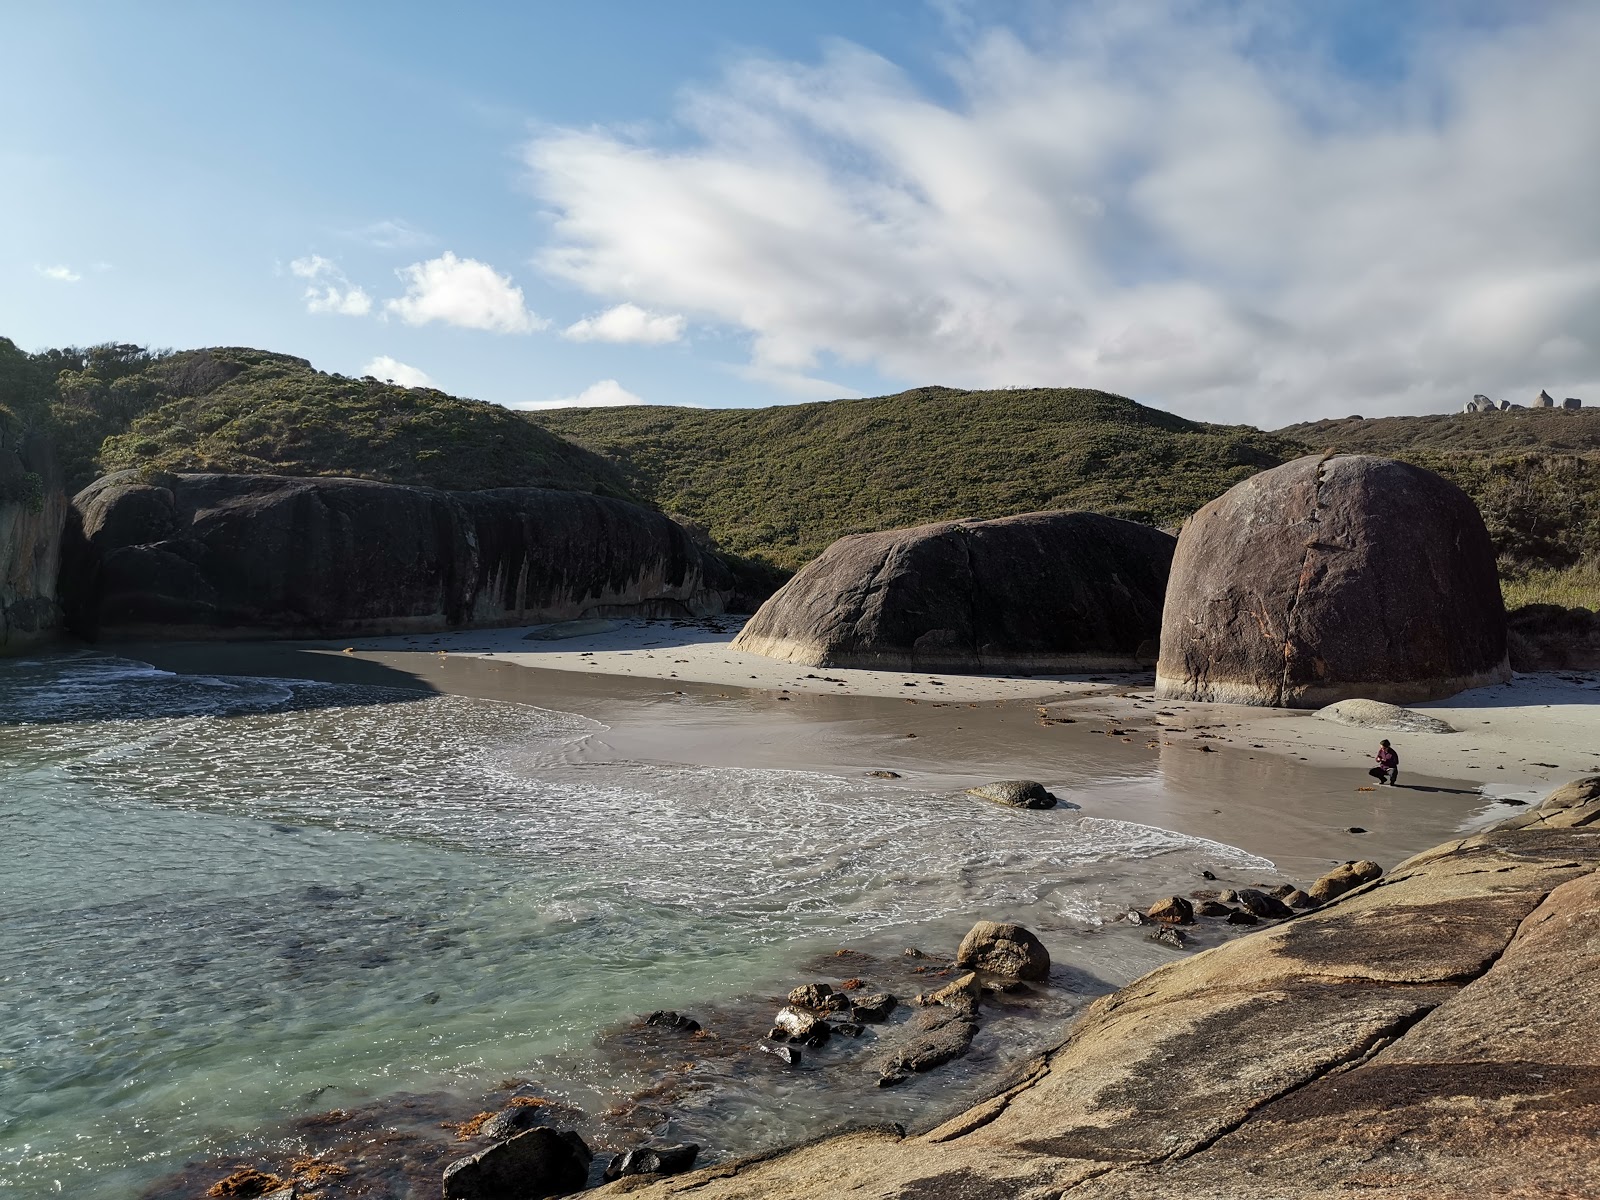 Fotografija Elephant Rocks Beach nahaja se v naravnem okolju